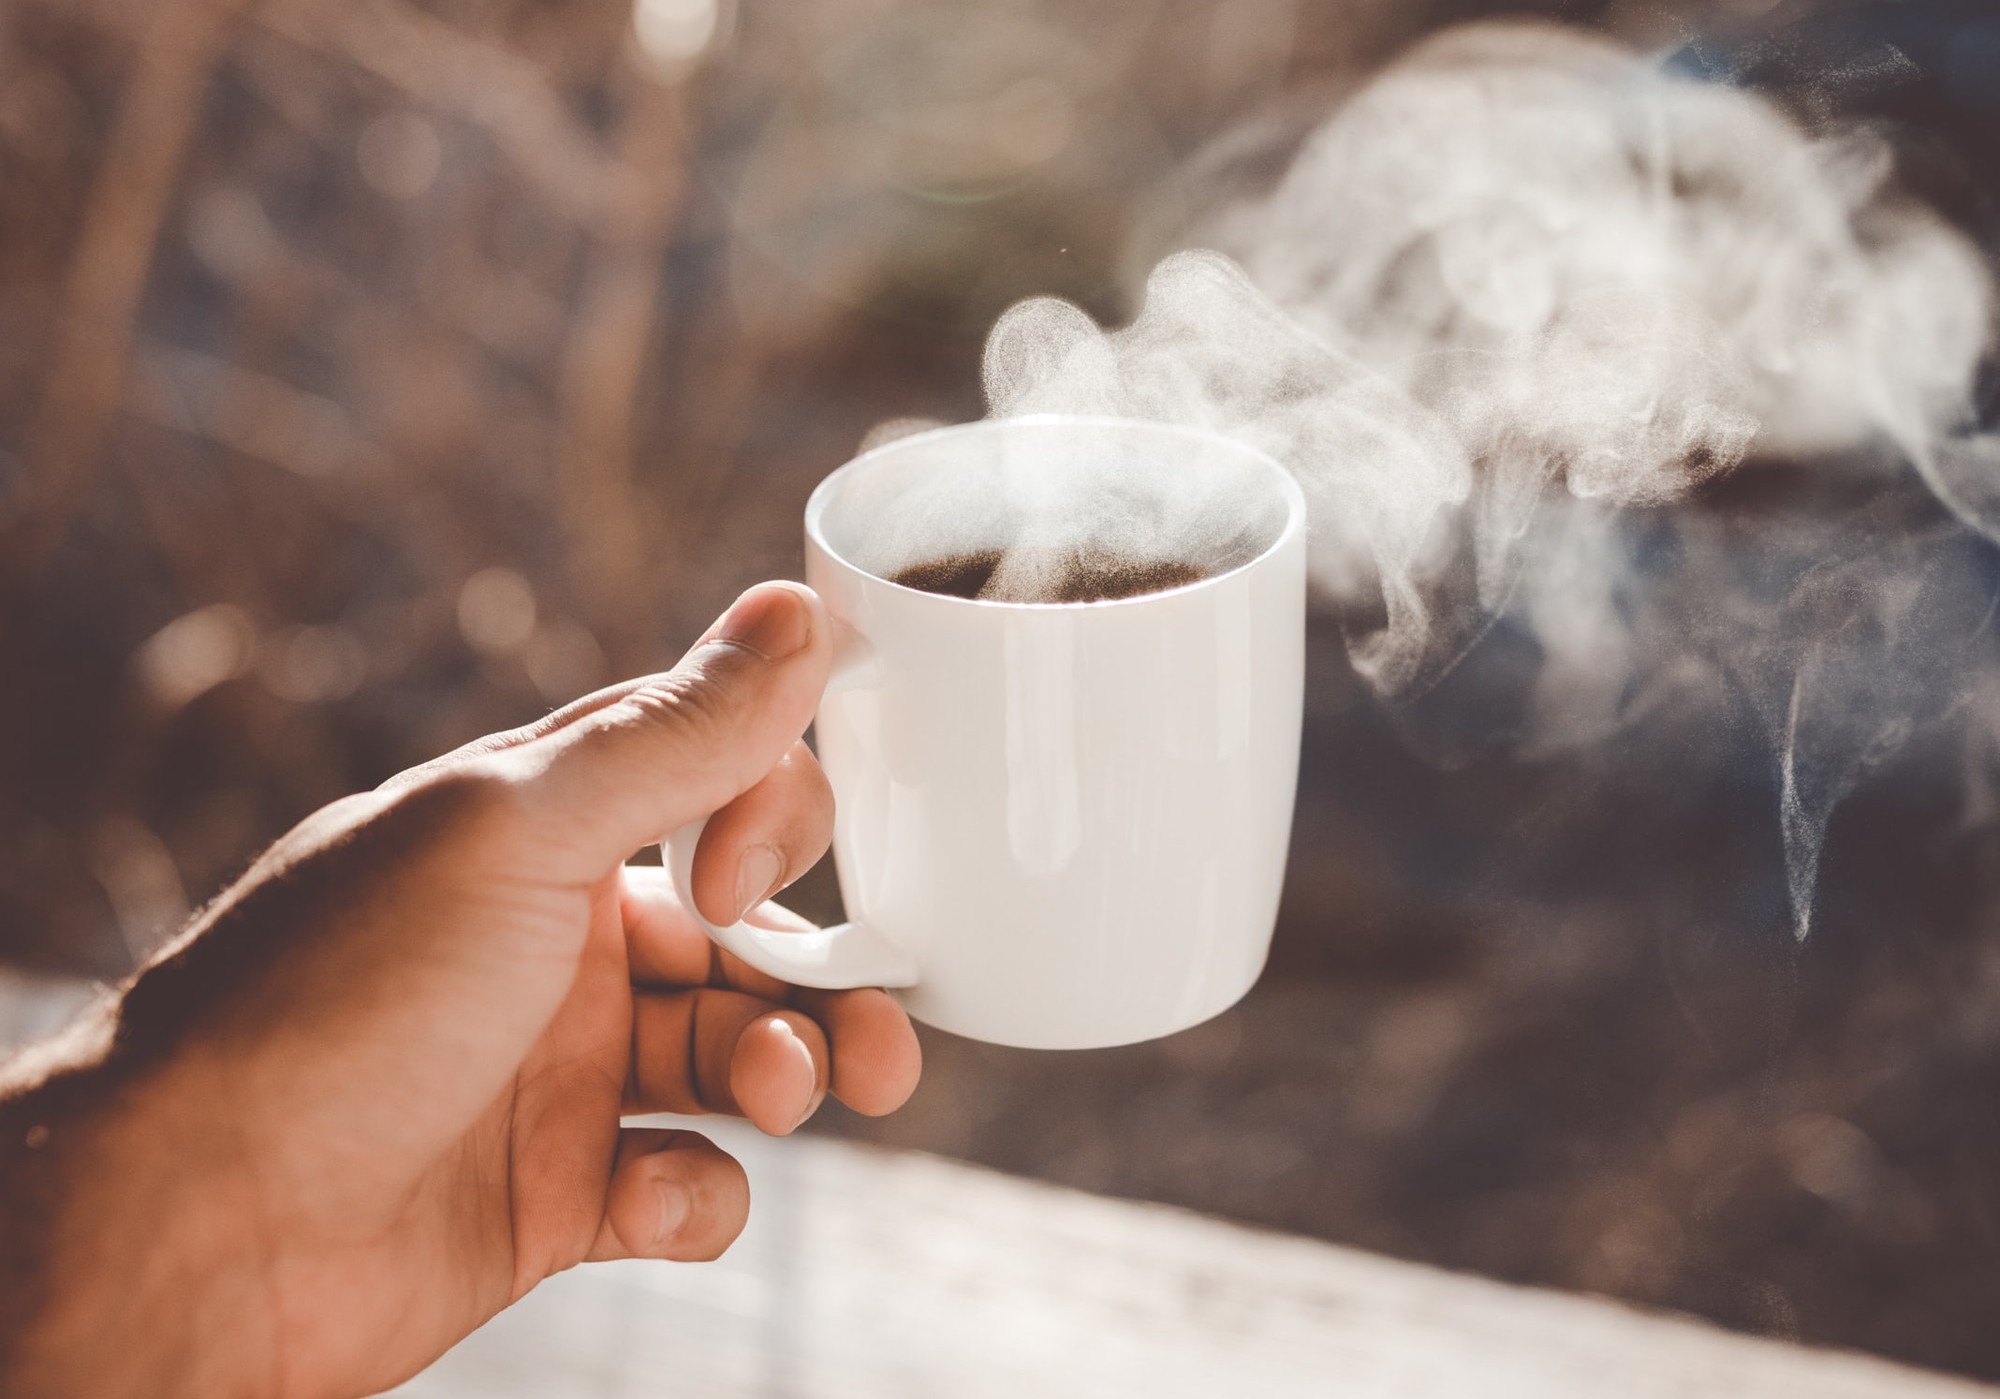 4 thời điểm không nên uống cà phê kẻo sức khỏe suy giảm, ung thư tìm đến - Ảnh 1.